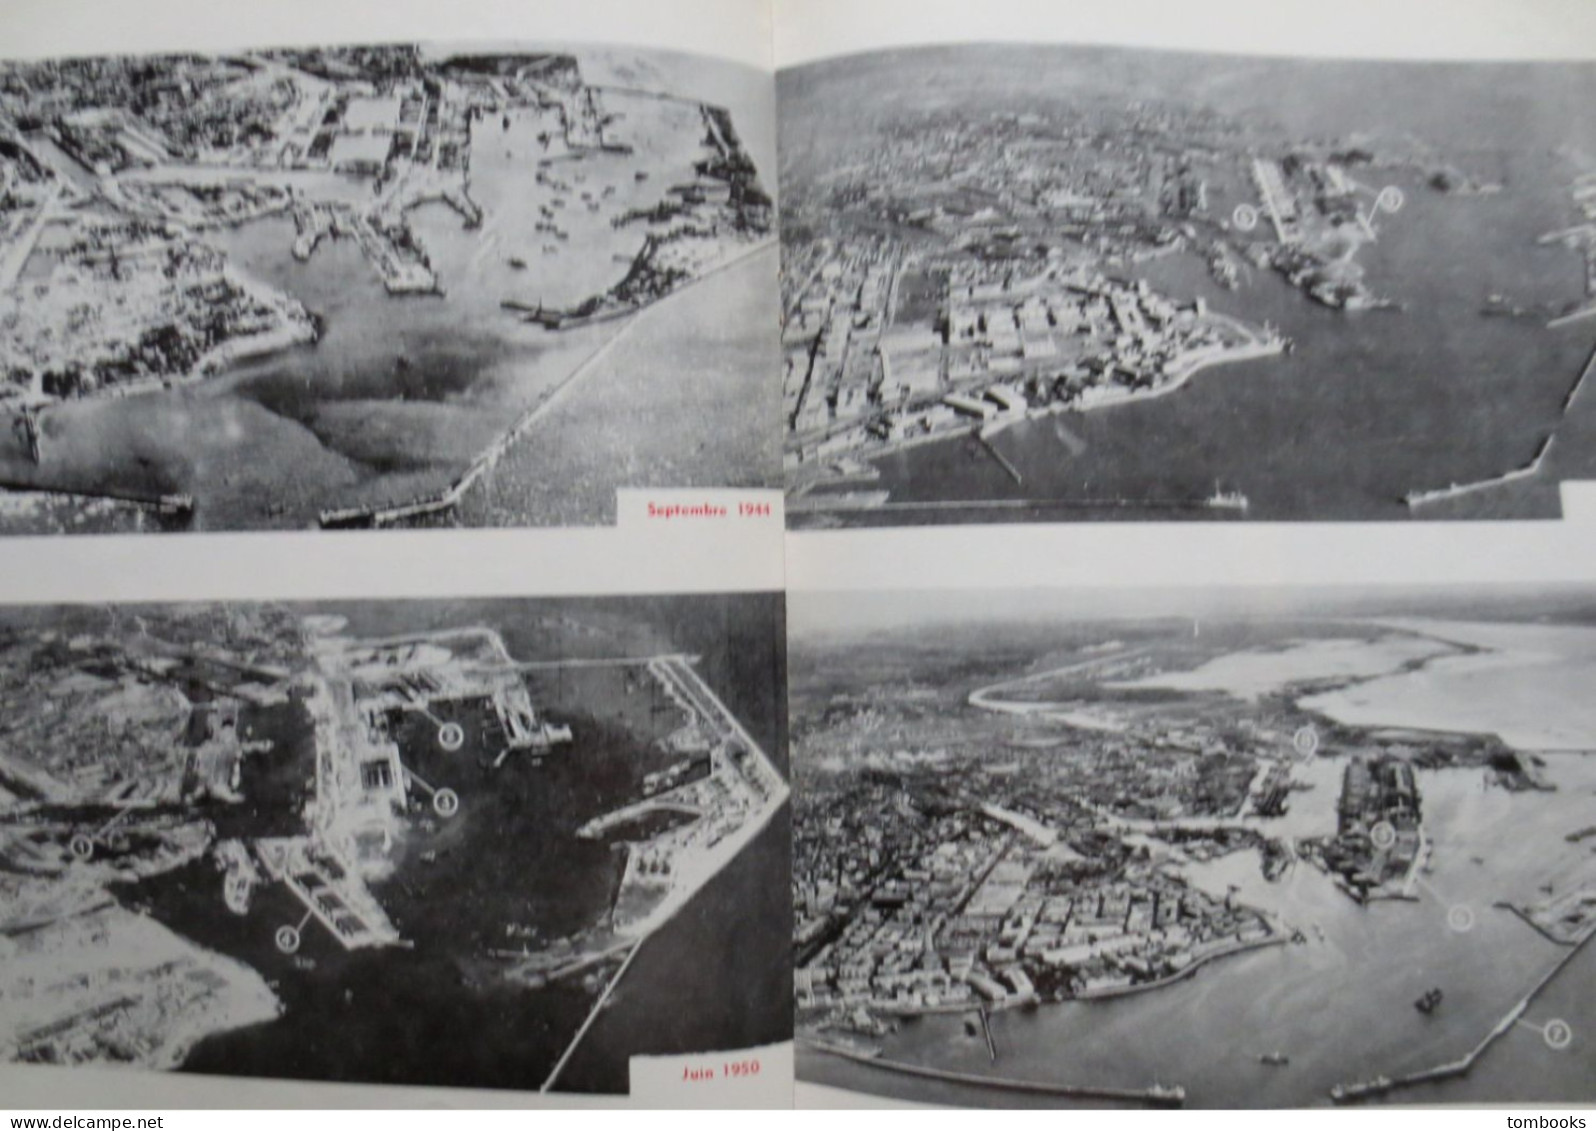 Le Havre - revue portuaire - Le Port du Havre Hier ,Aujourd'hui , Demain - 1967 avec plan dépliant - TBE -